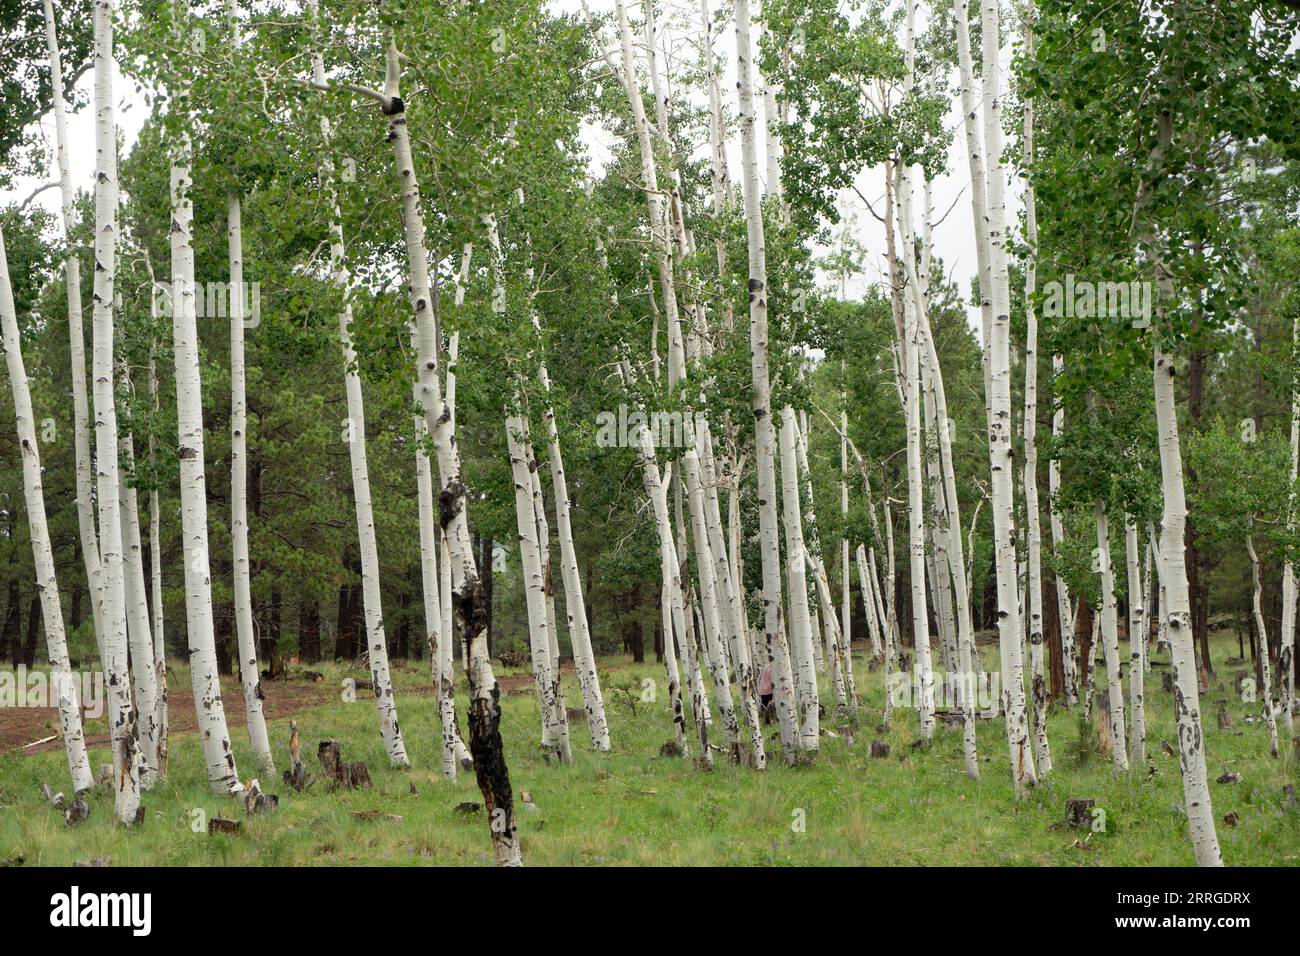 Ein Aufschluss von Aspen-Bäumen in einem Wald Stockfoto